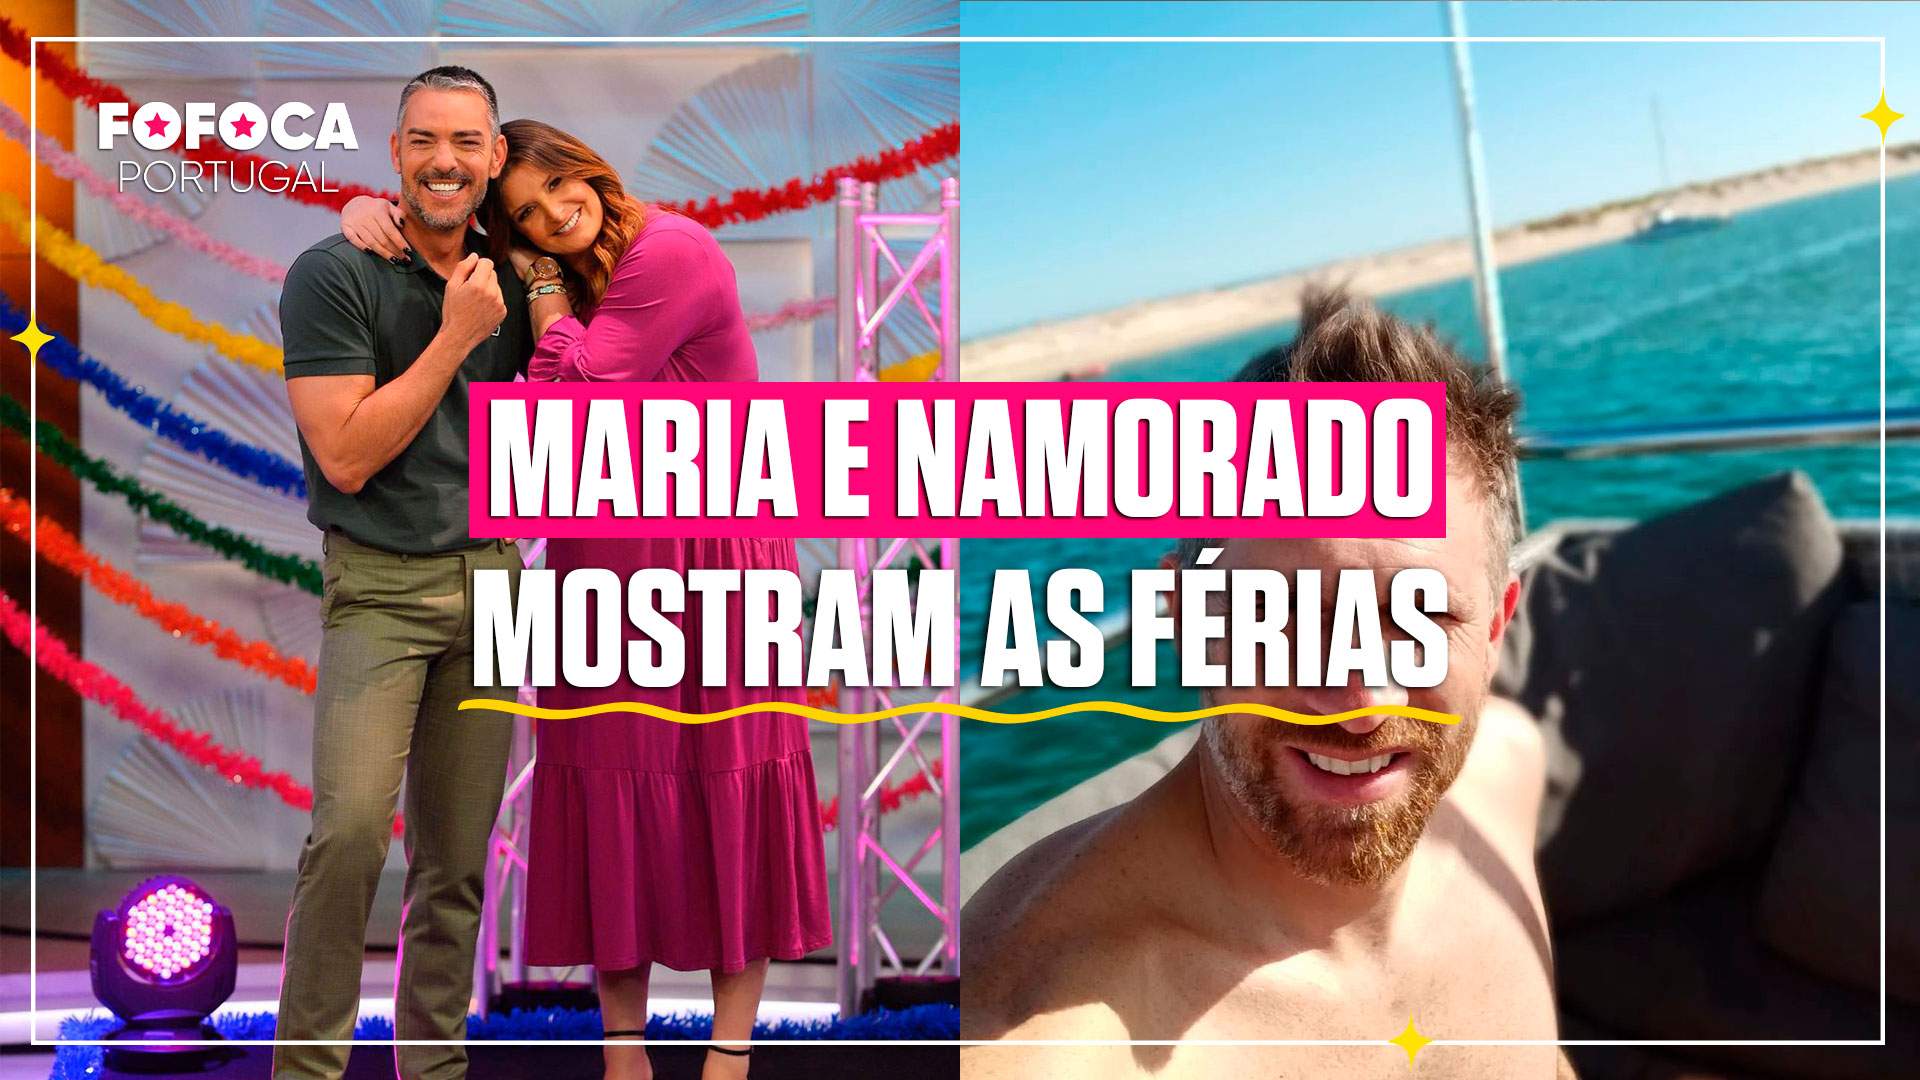 Maria Botelho Moniz e namorado